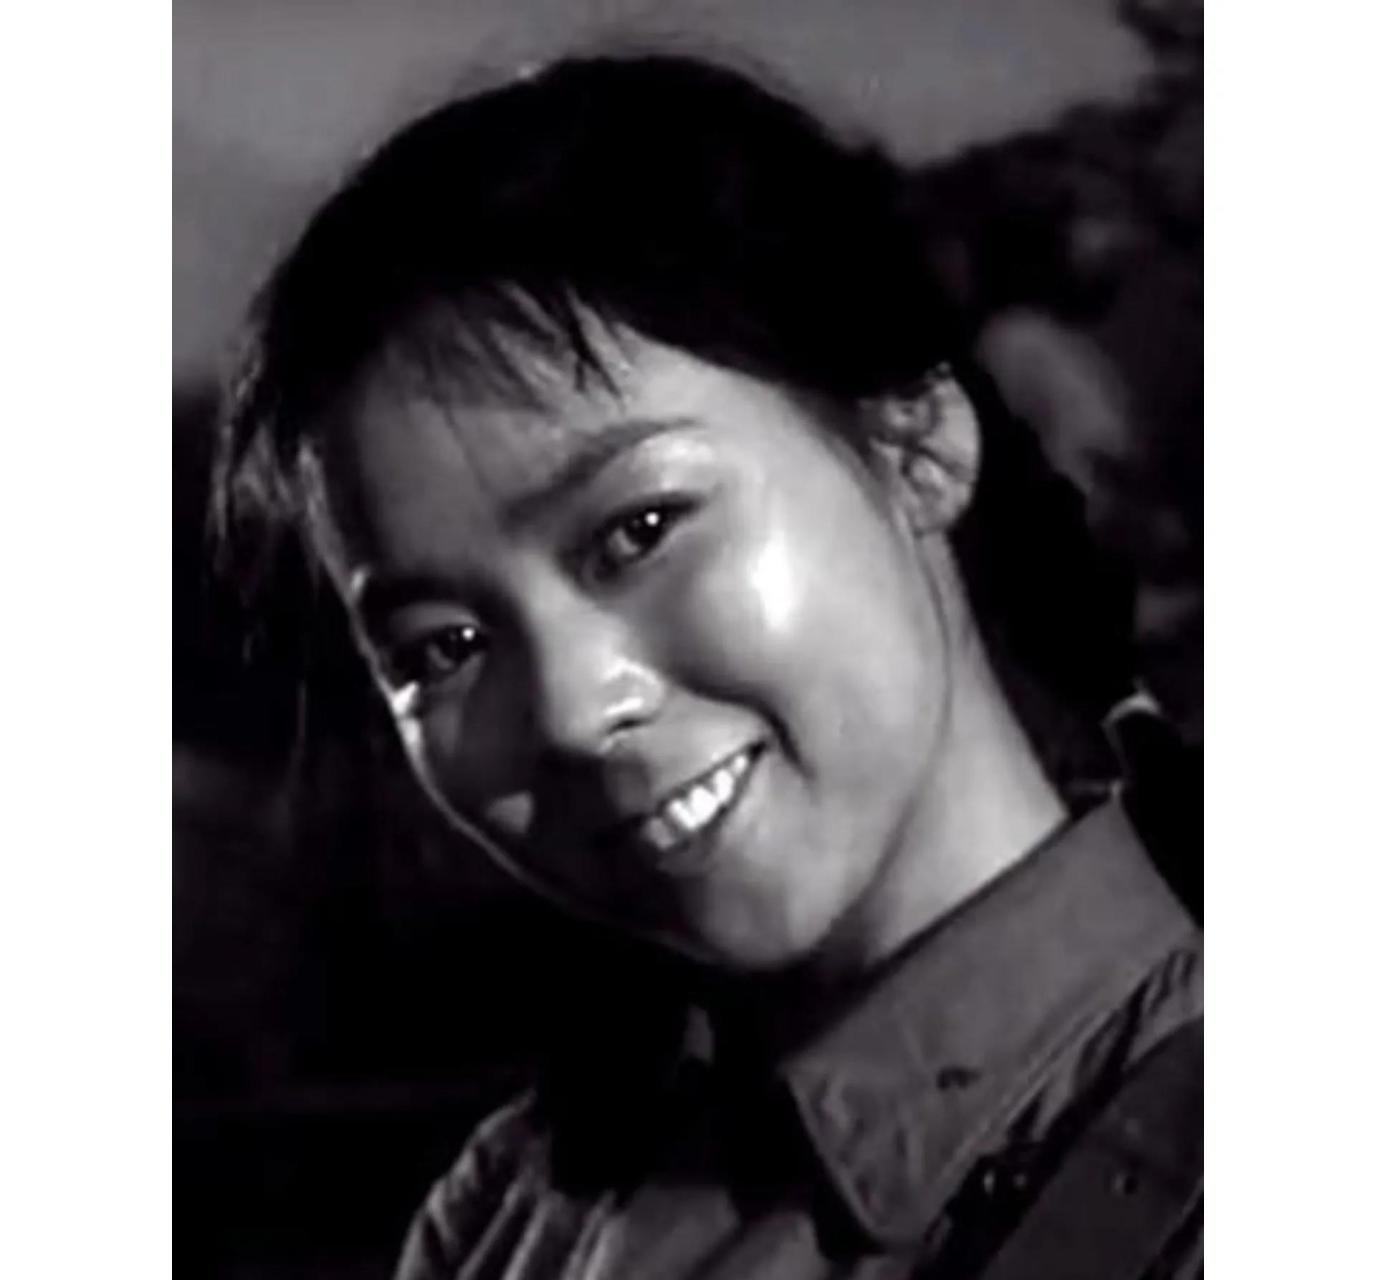 王芳刘尚娴 刘尚娴,1941年生于上海,1963年毕业于北京电影学院表演